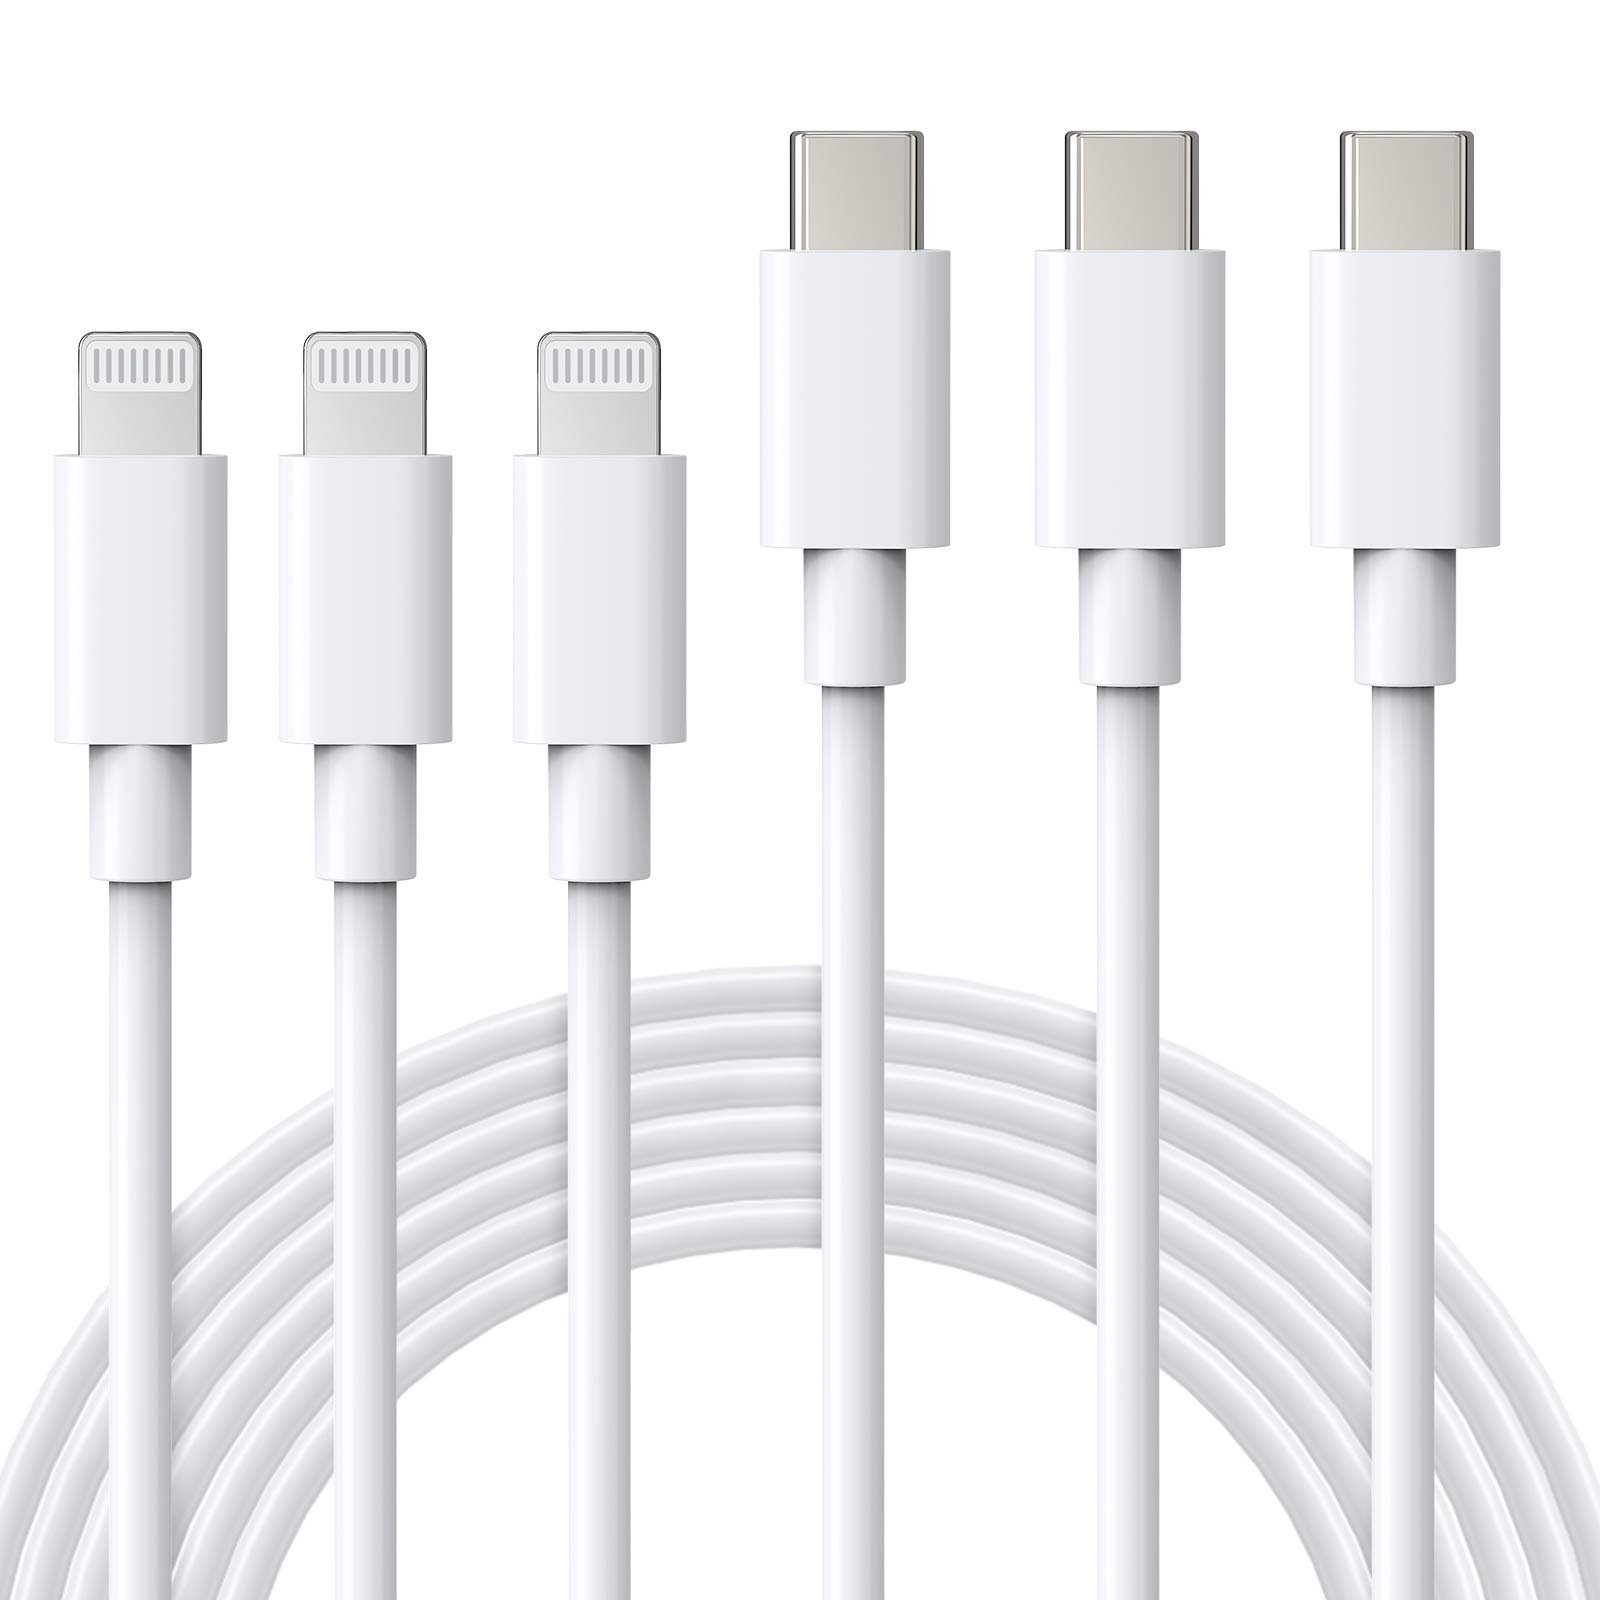 ilikable »2 Pack Lightning zu USB C Kabel 2M [ MFi Zertifiziert ]«  Smartphone-Kabel, Schnellladekabel USB C Lightning Kabel